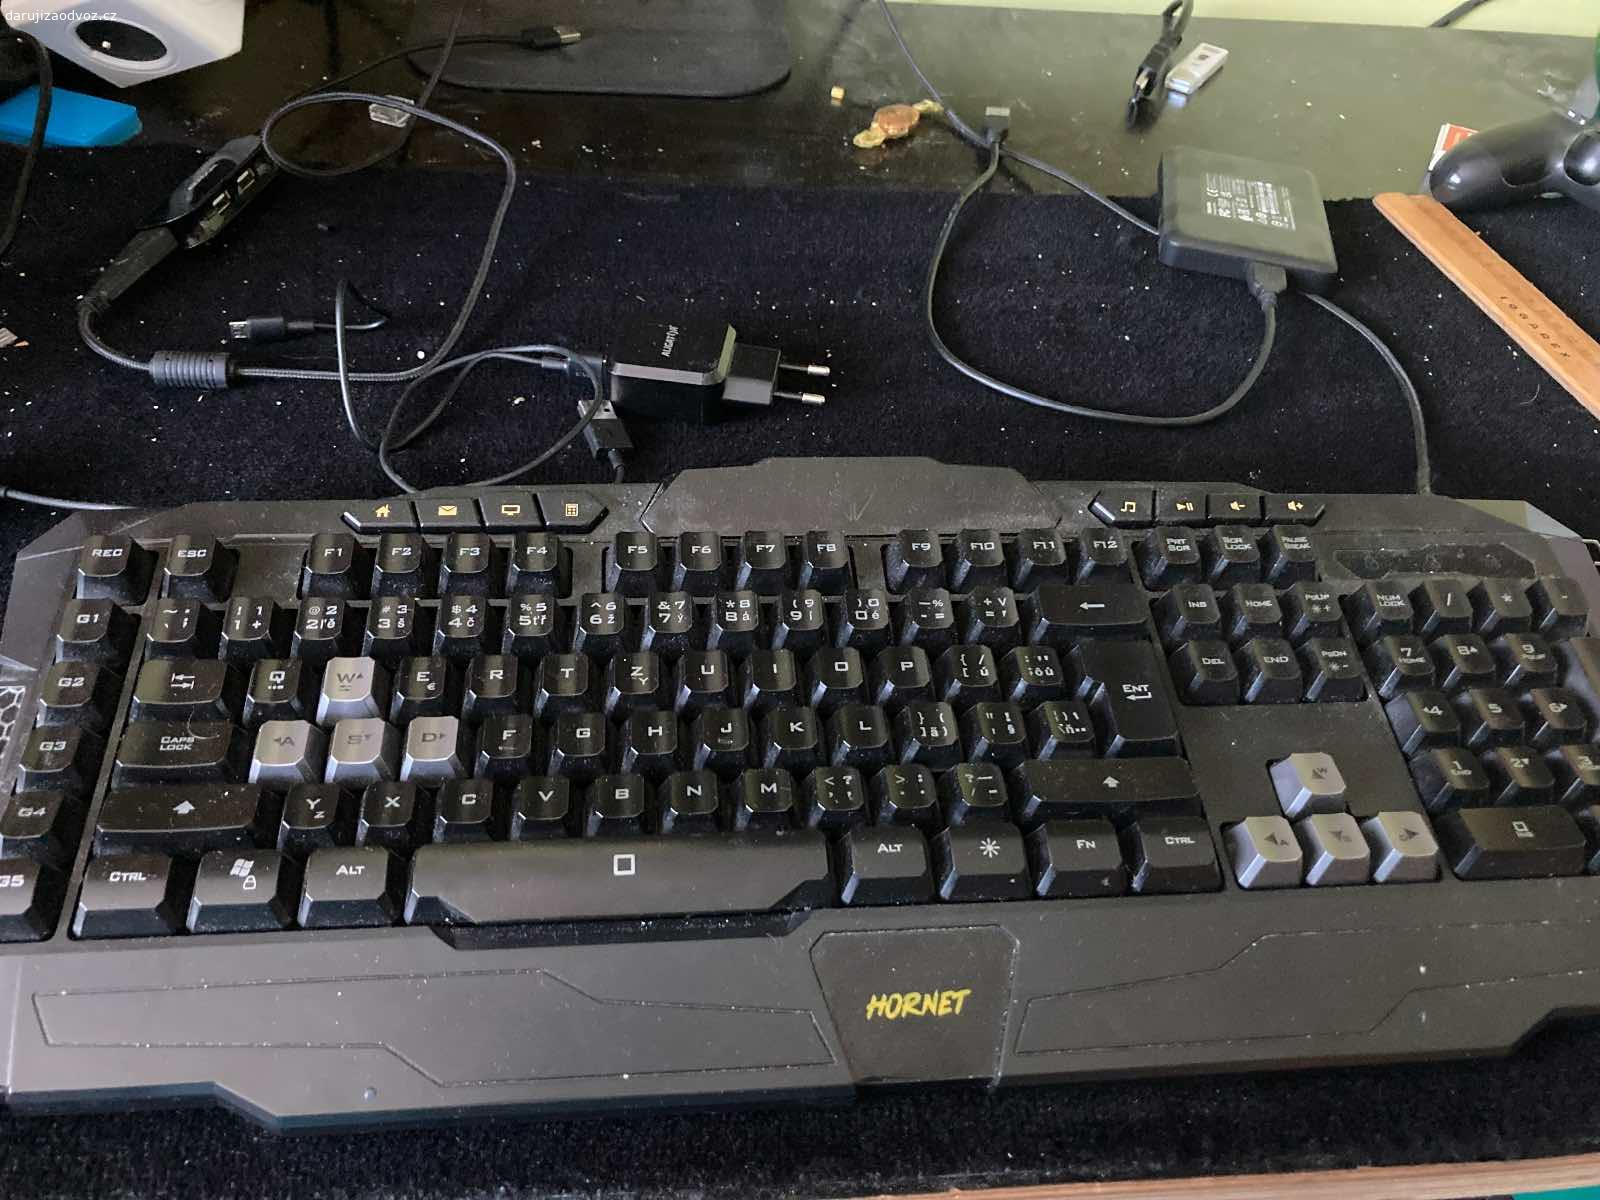 Daruji funkční klávesnici Yankee Hornet